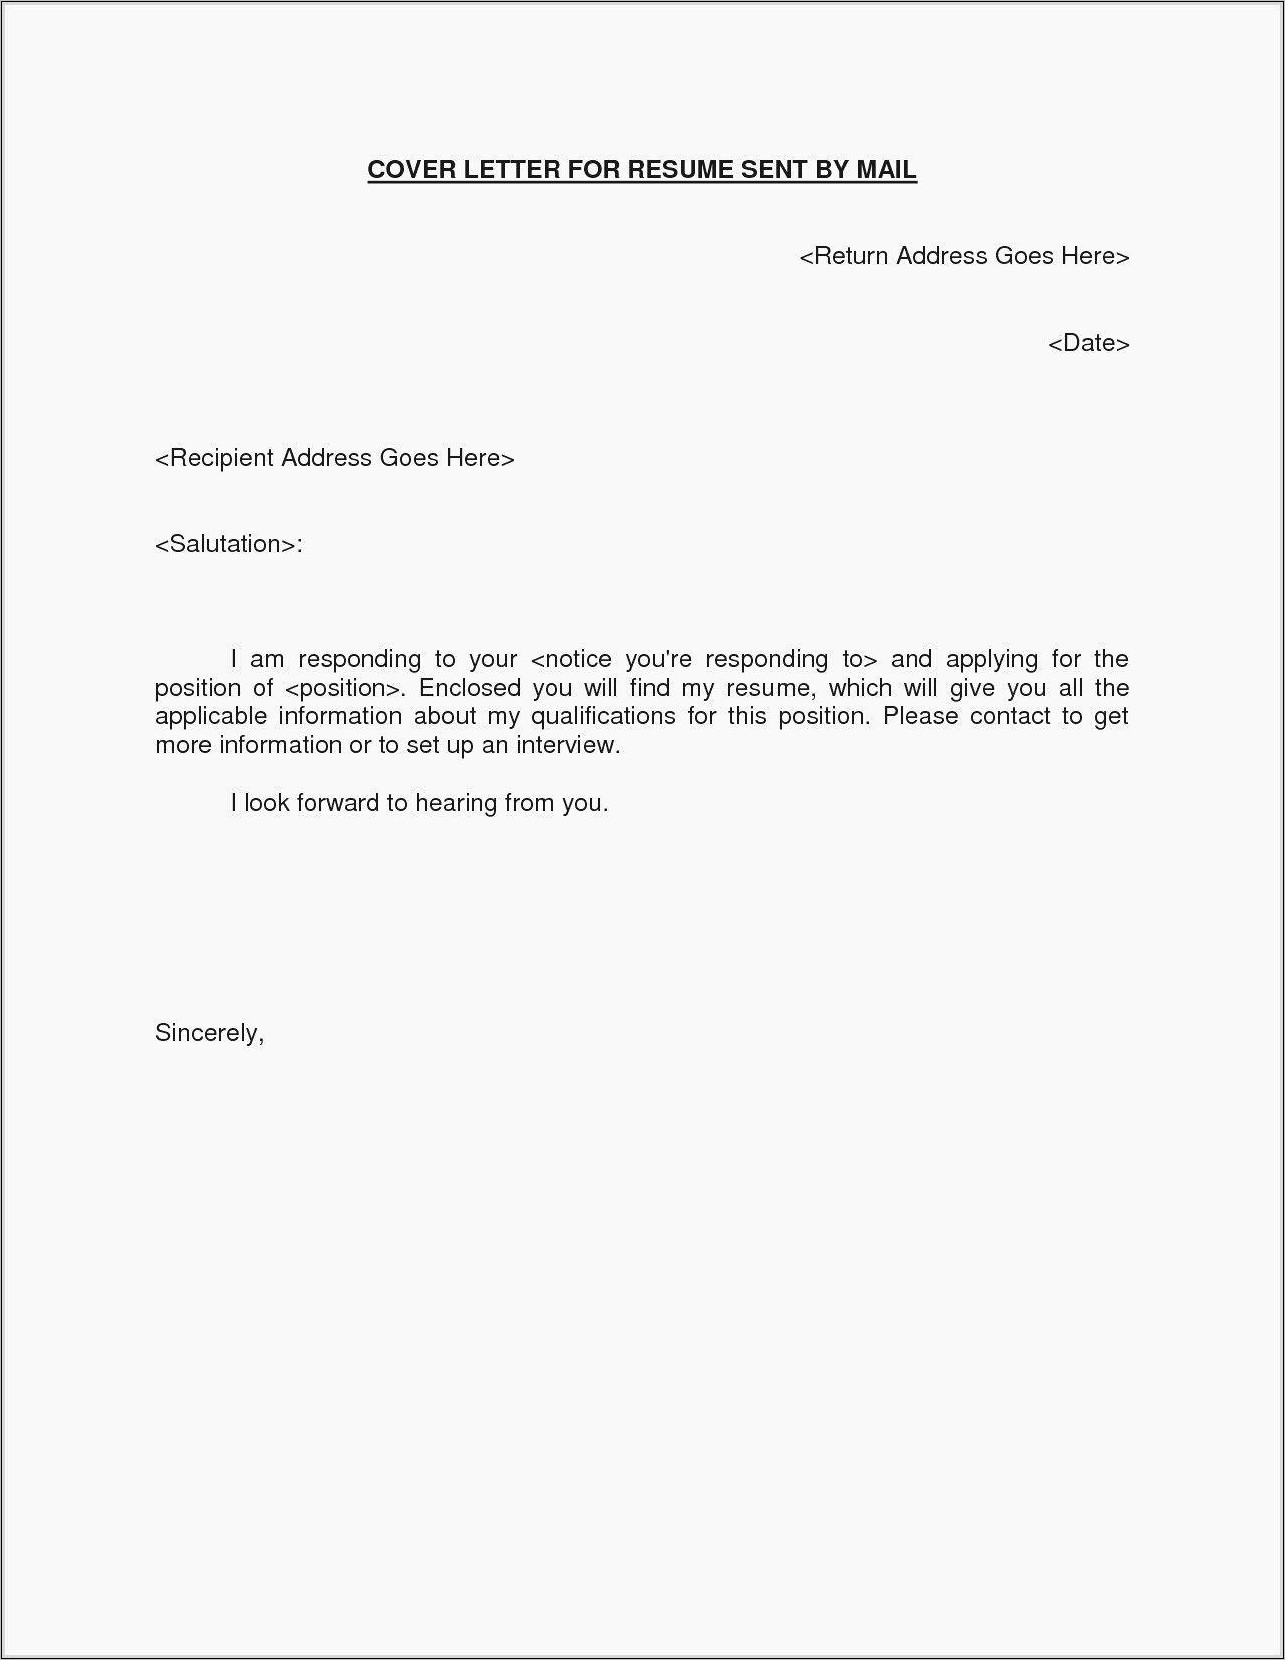 Sample Letter For Sending Resume